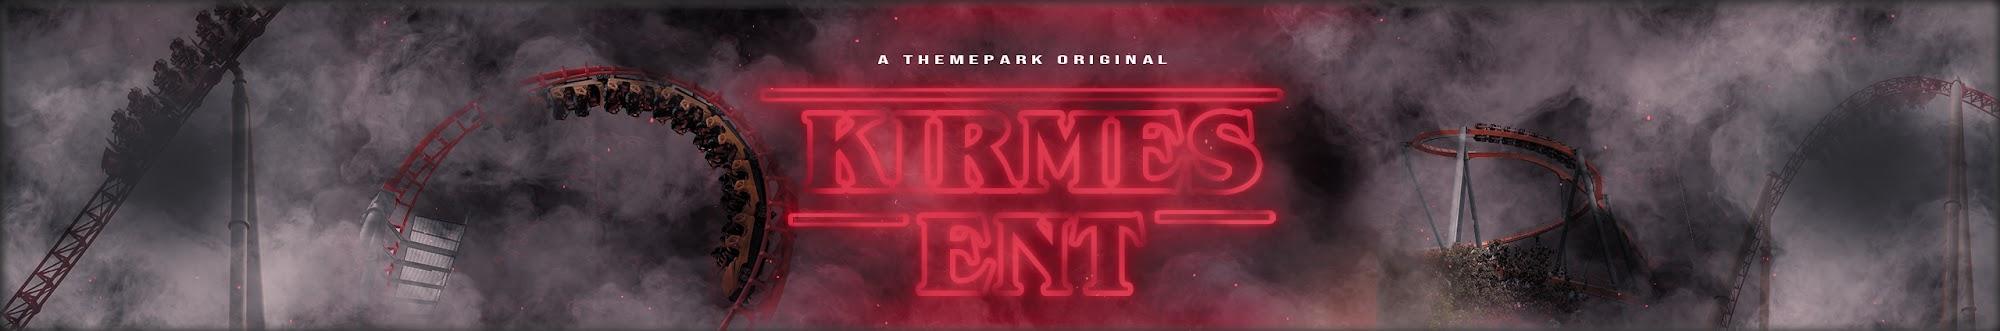 Kirmes Entertainment